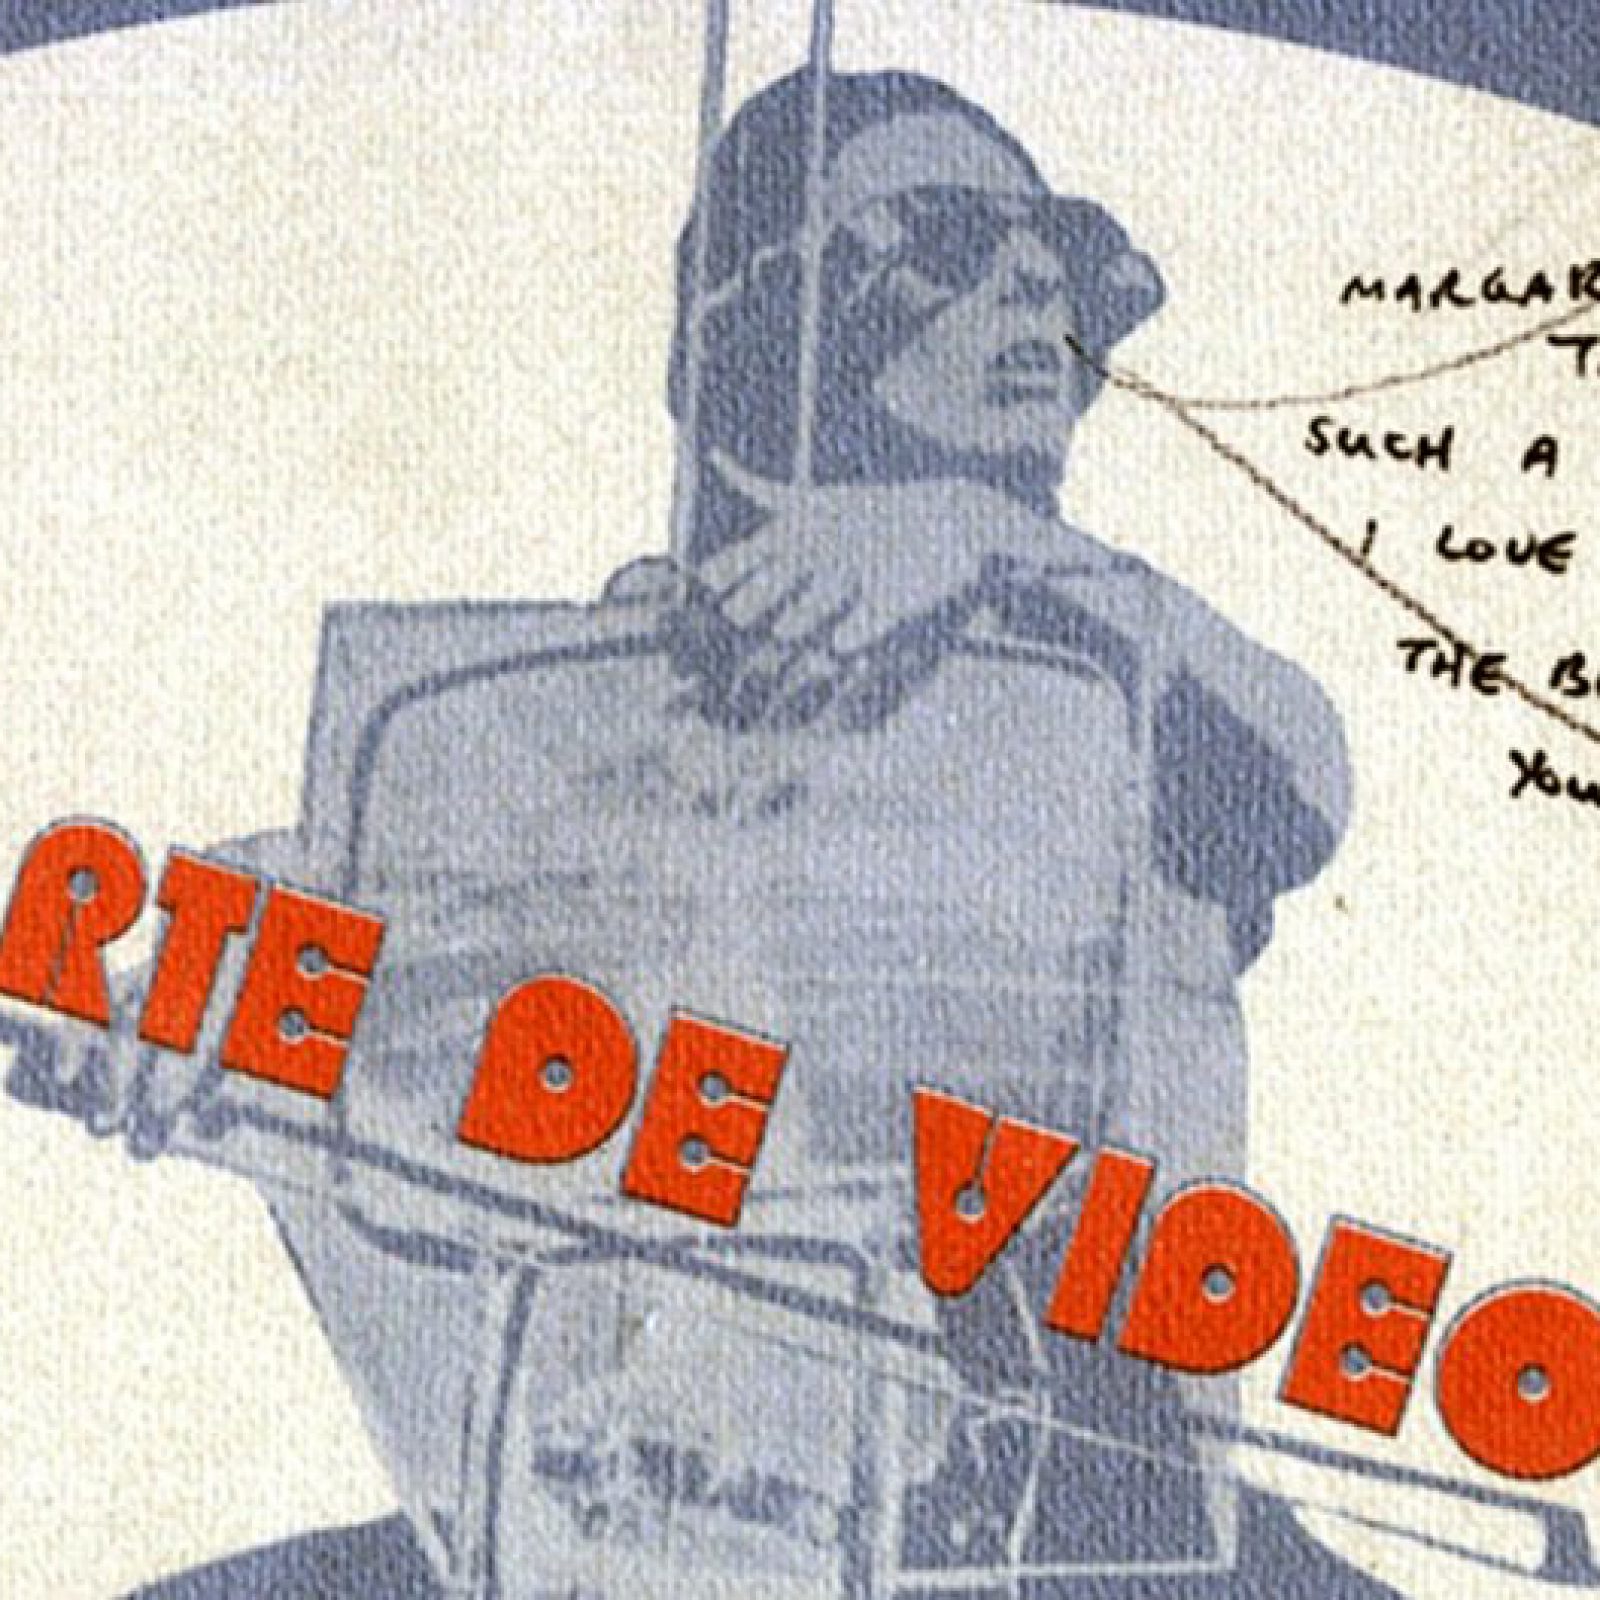 Catálogo de la exposición Arte de video, Museo de Arte Contemporáneo de Caracas, 1975. Diseño gráfico: Soledad Mendoza. Dedicatoria a Margarita D’Amico por Charlotte Moorman.